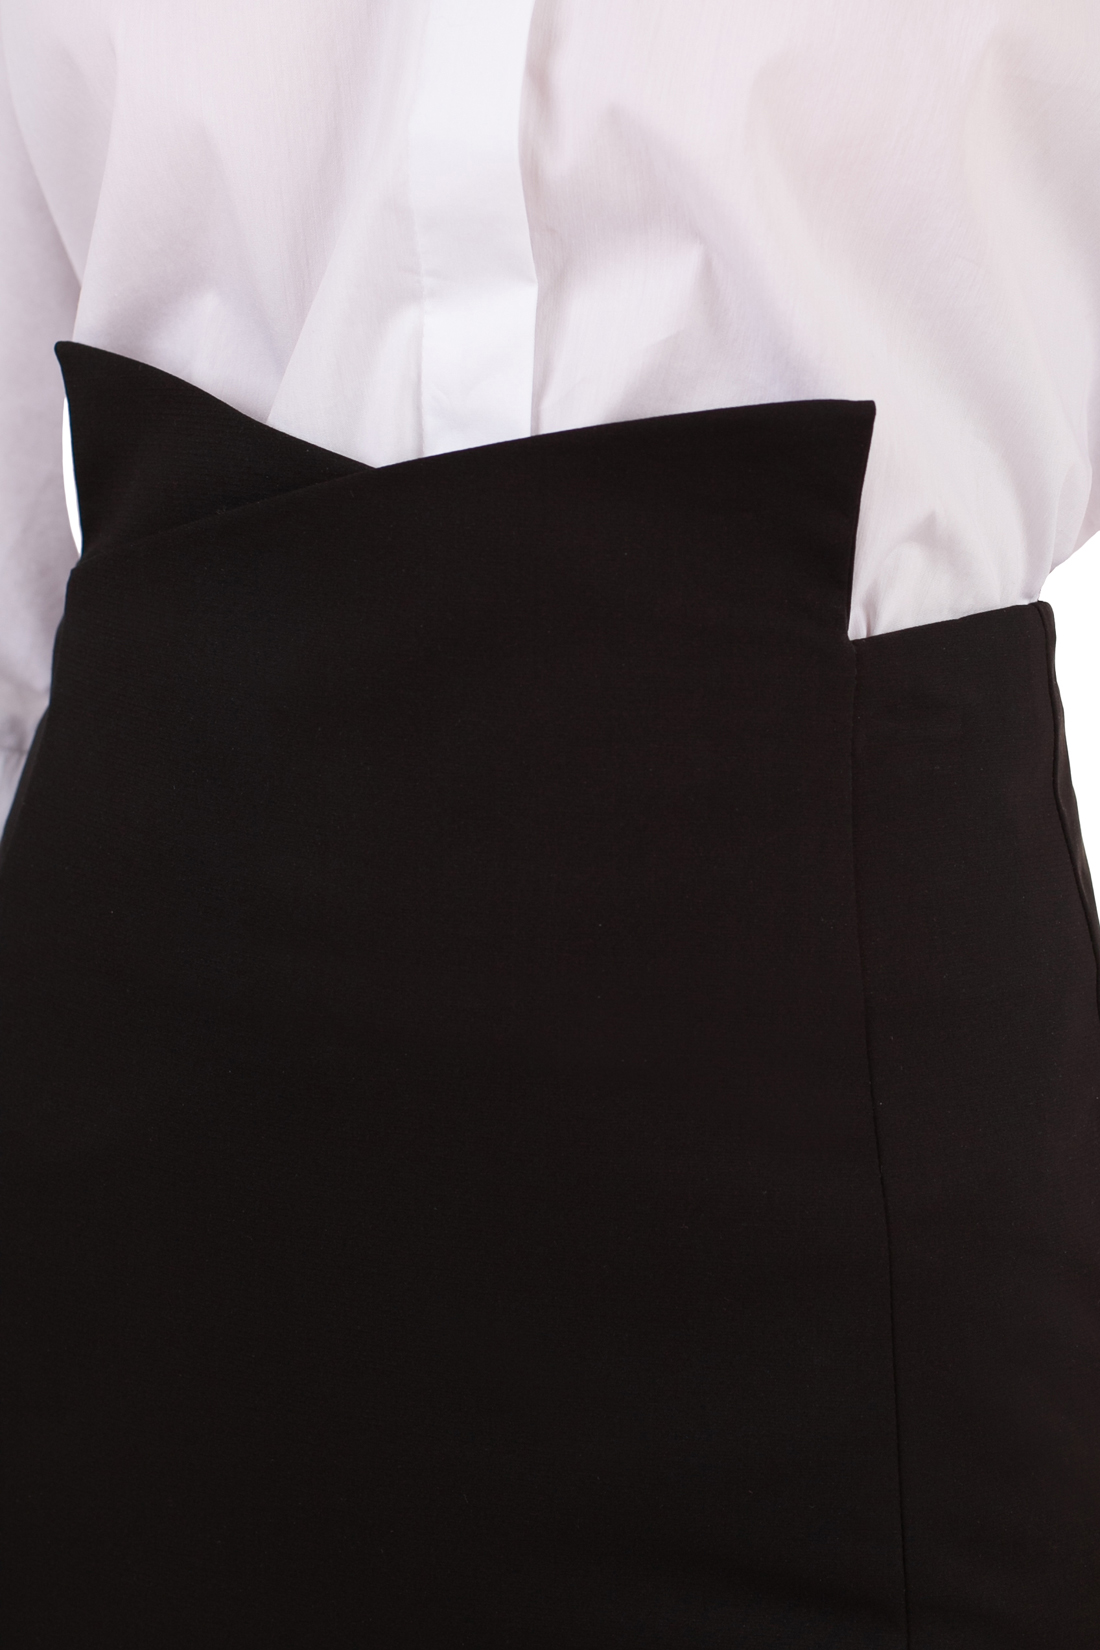 Чёрная юбка-миди (арт. baon B478037), размер S, цвет черный Чёрная юбка-миди (арт. baon B478037) - фото 4